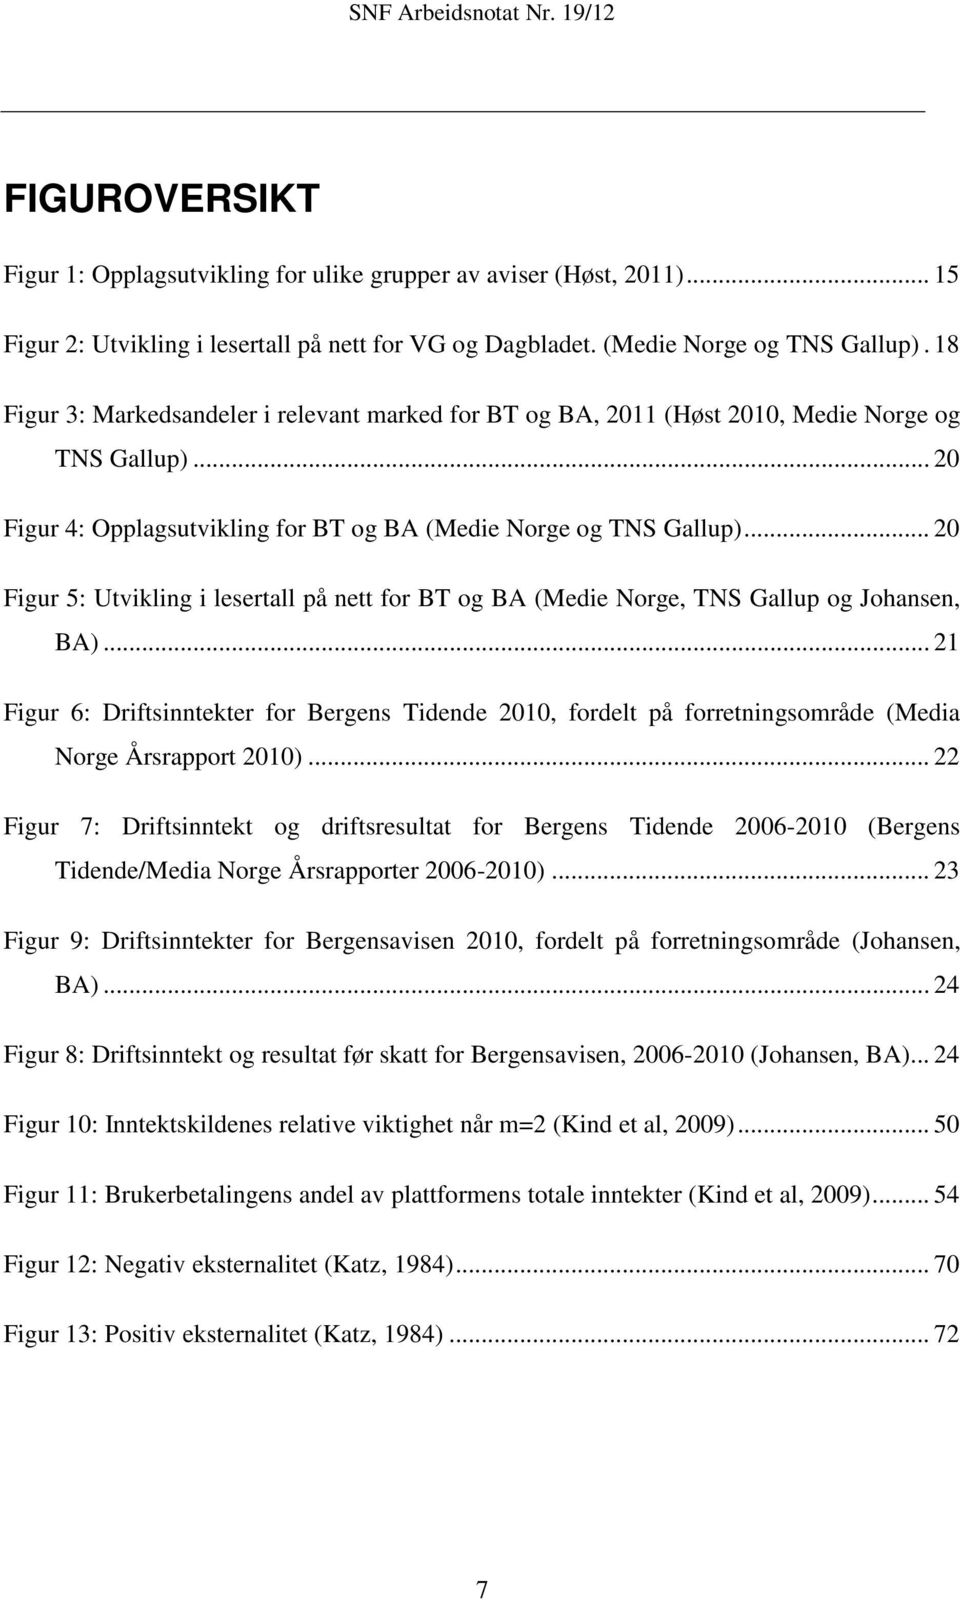 .. 20 Figur 5: Utvikling i lesertall på nett for BT og BA (Medie Norge, TNS Gallup og Johansen, BA).